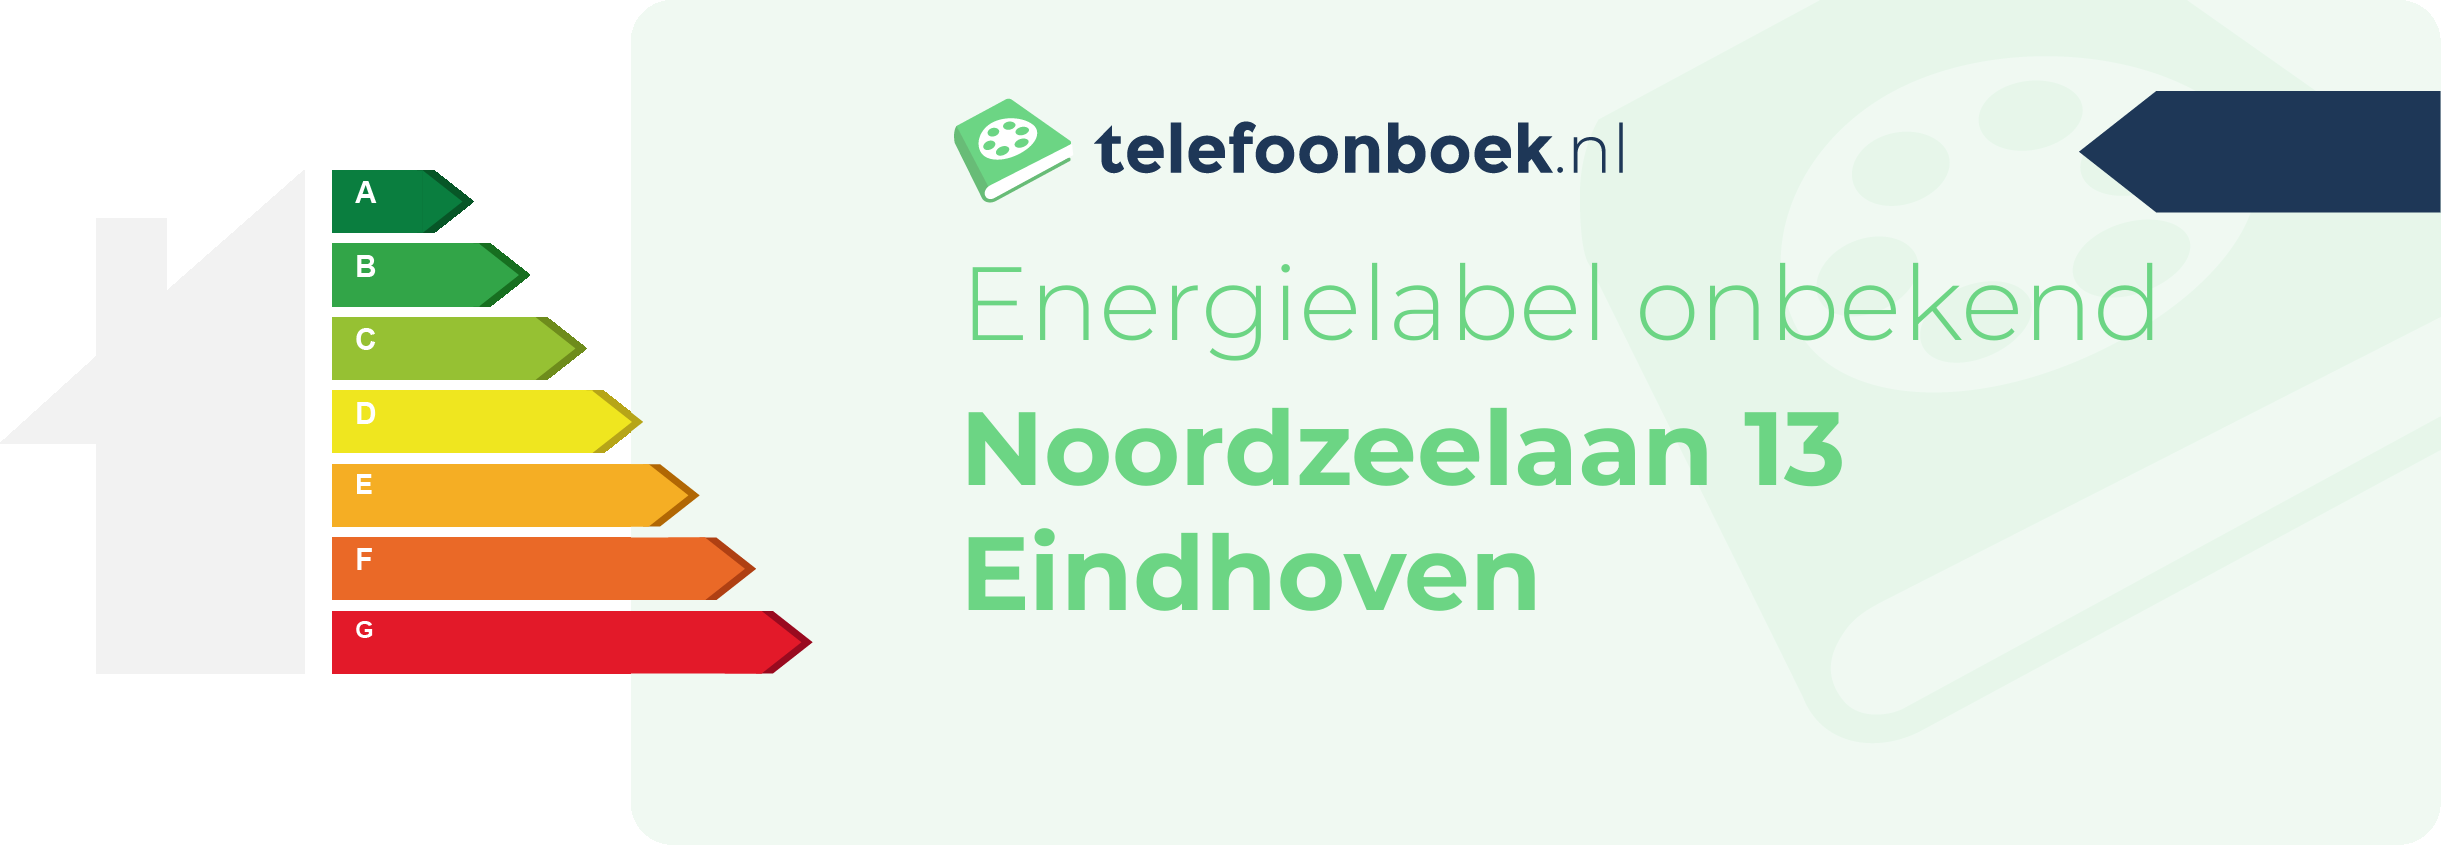 Energielabel Noordzeelaan 13 Eindhoven